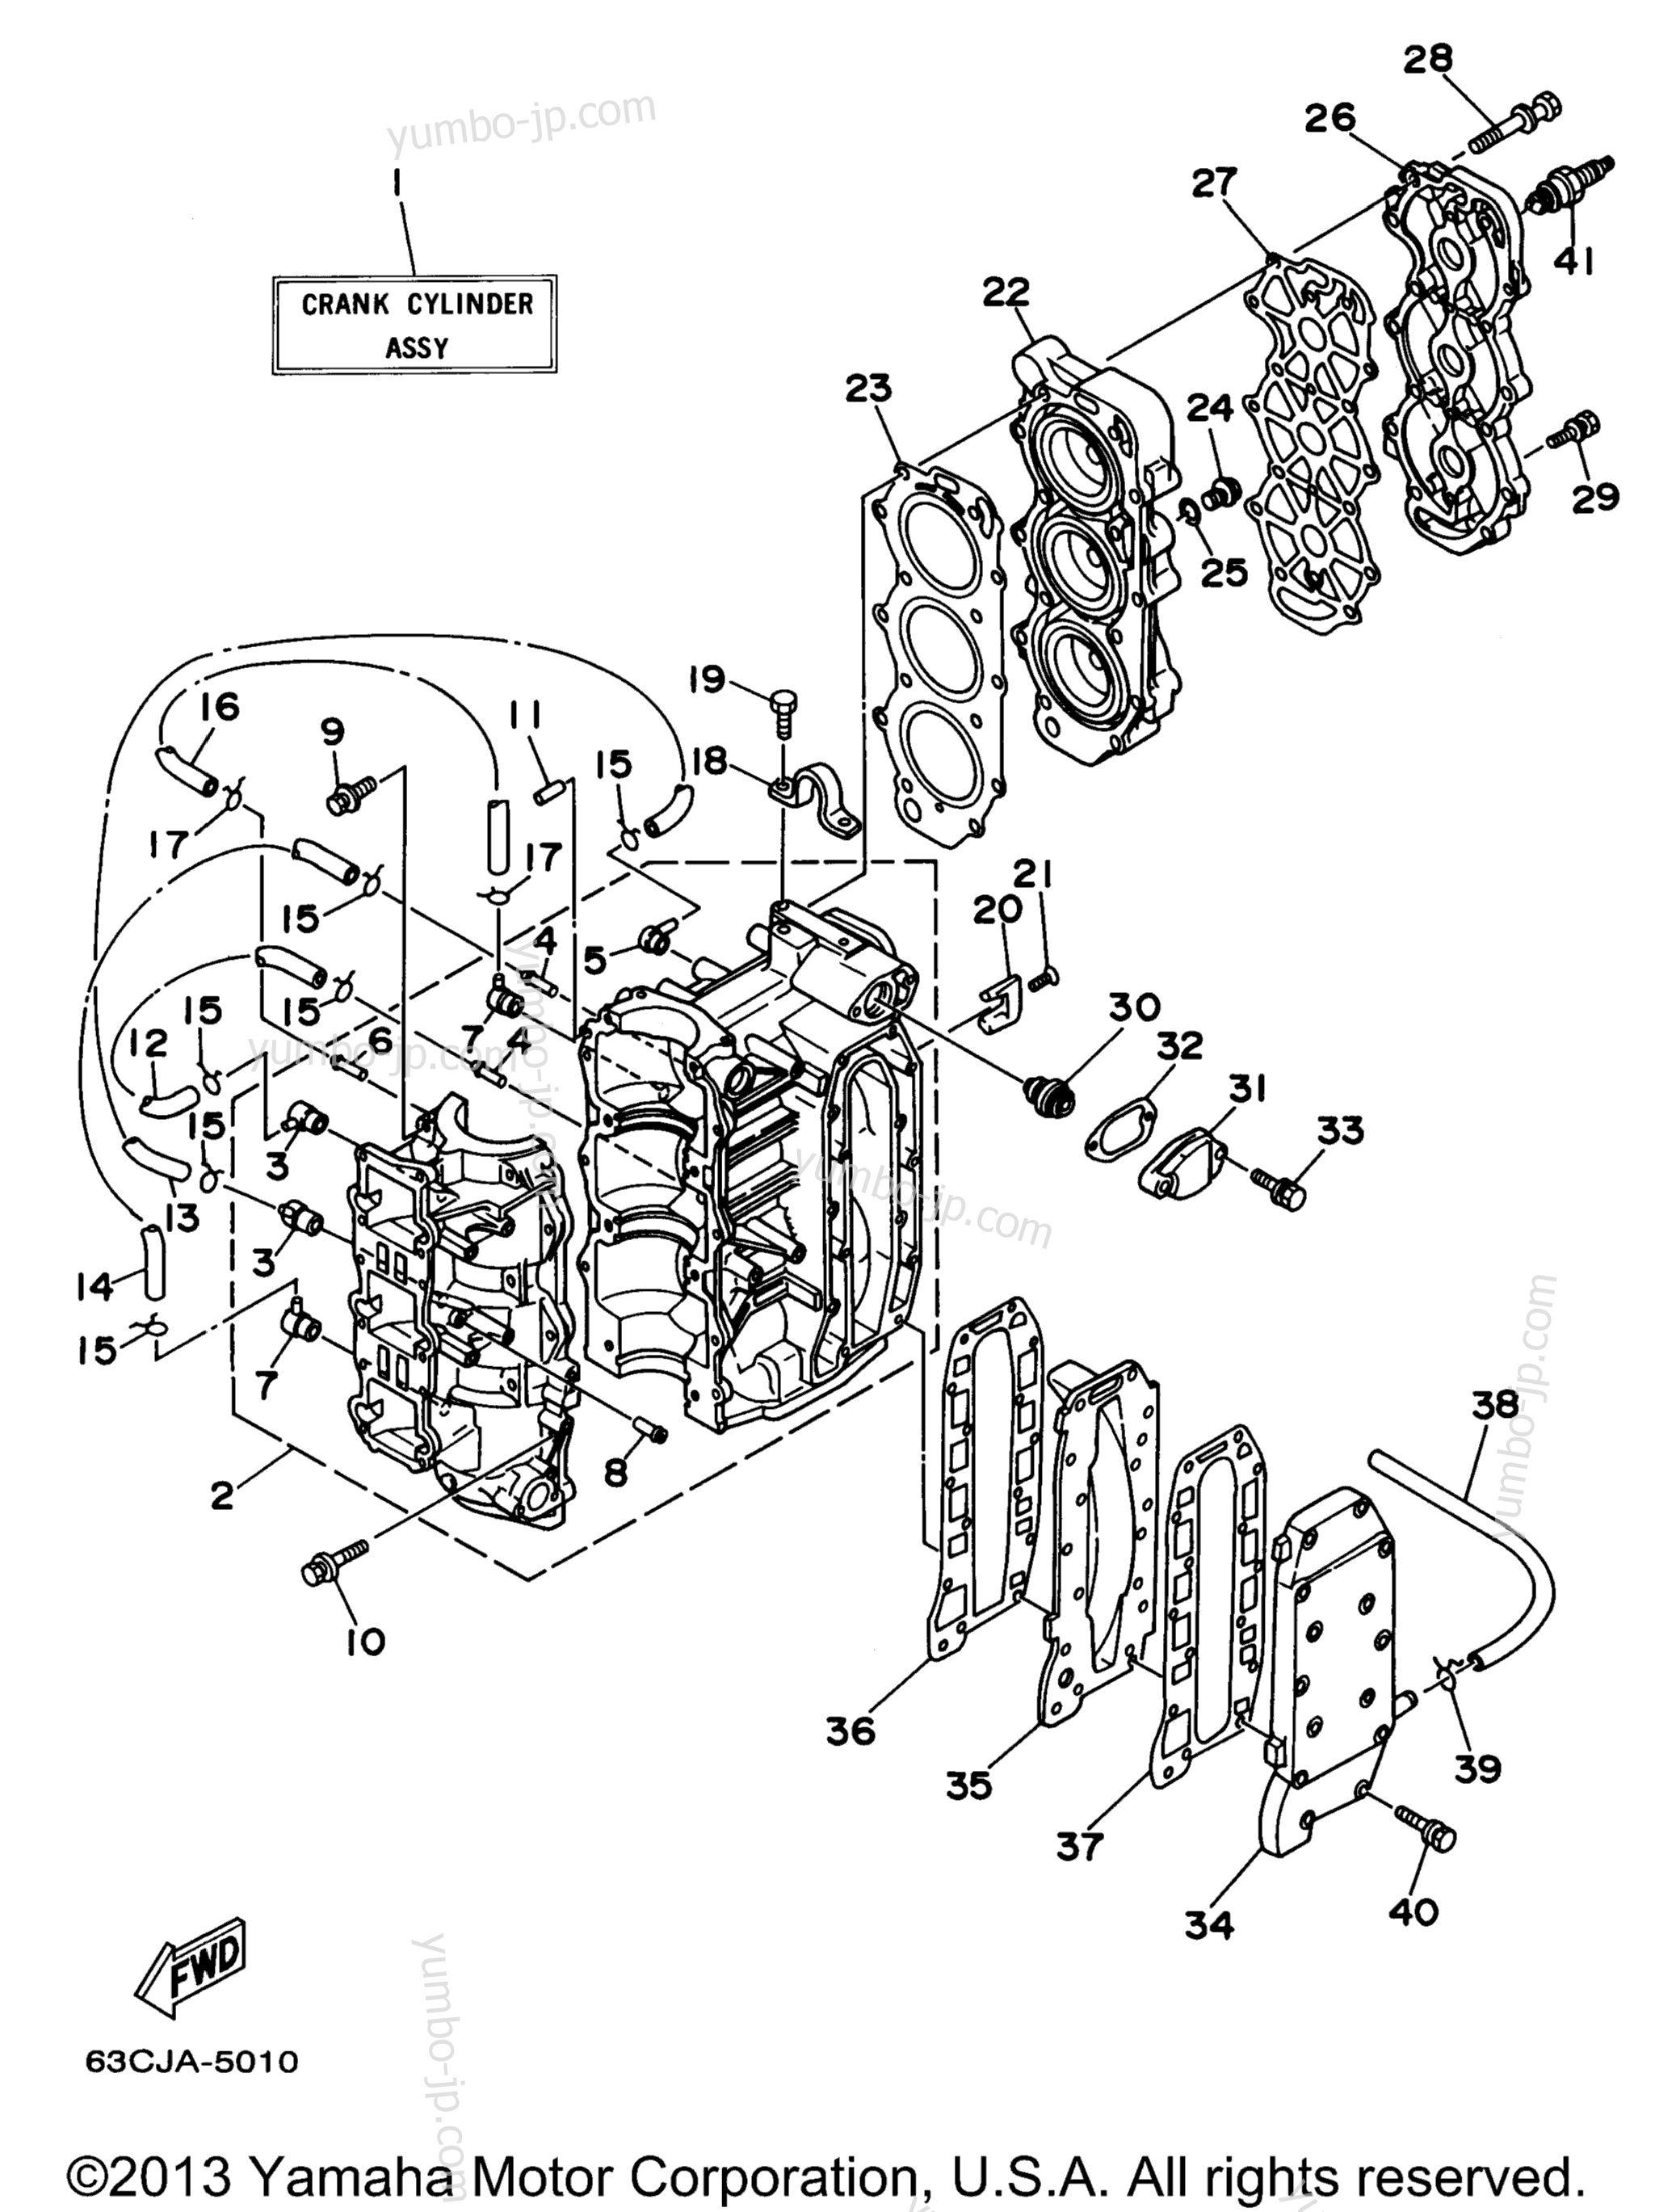 Cylinder Crankcase для лодочных моторов YAMAHA P40EJRW_THLW (40MLHW) 1998 г.